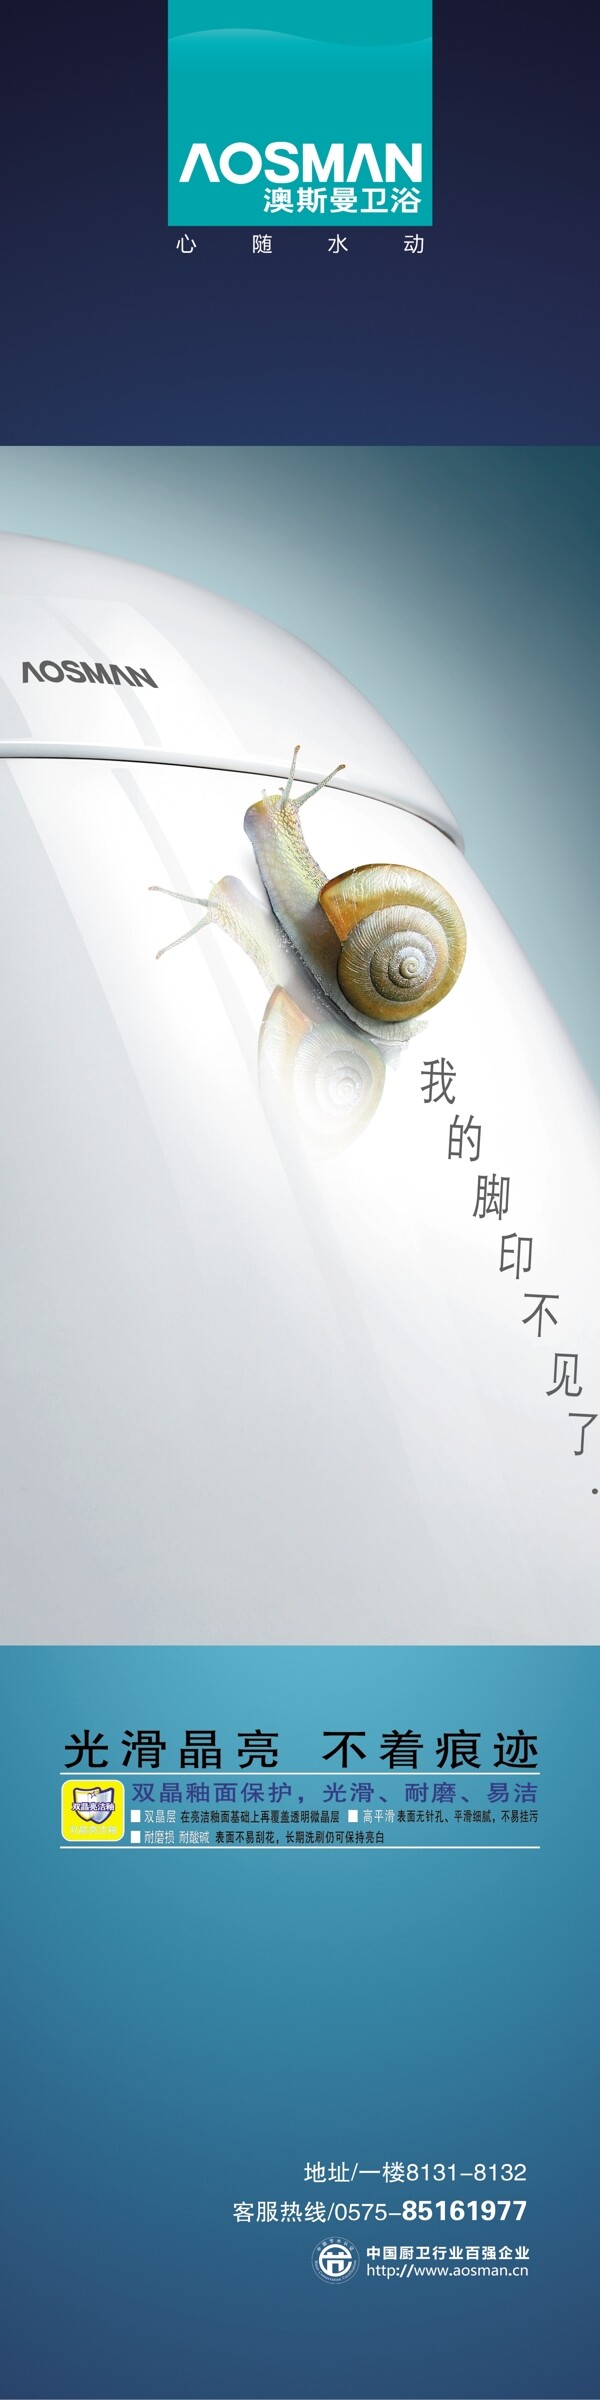 蜗牛的脚印图片